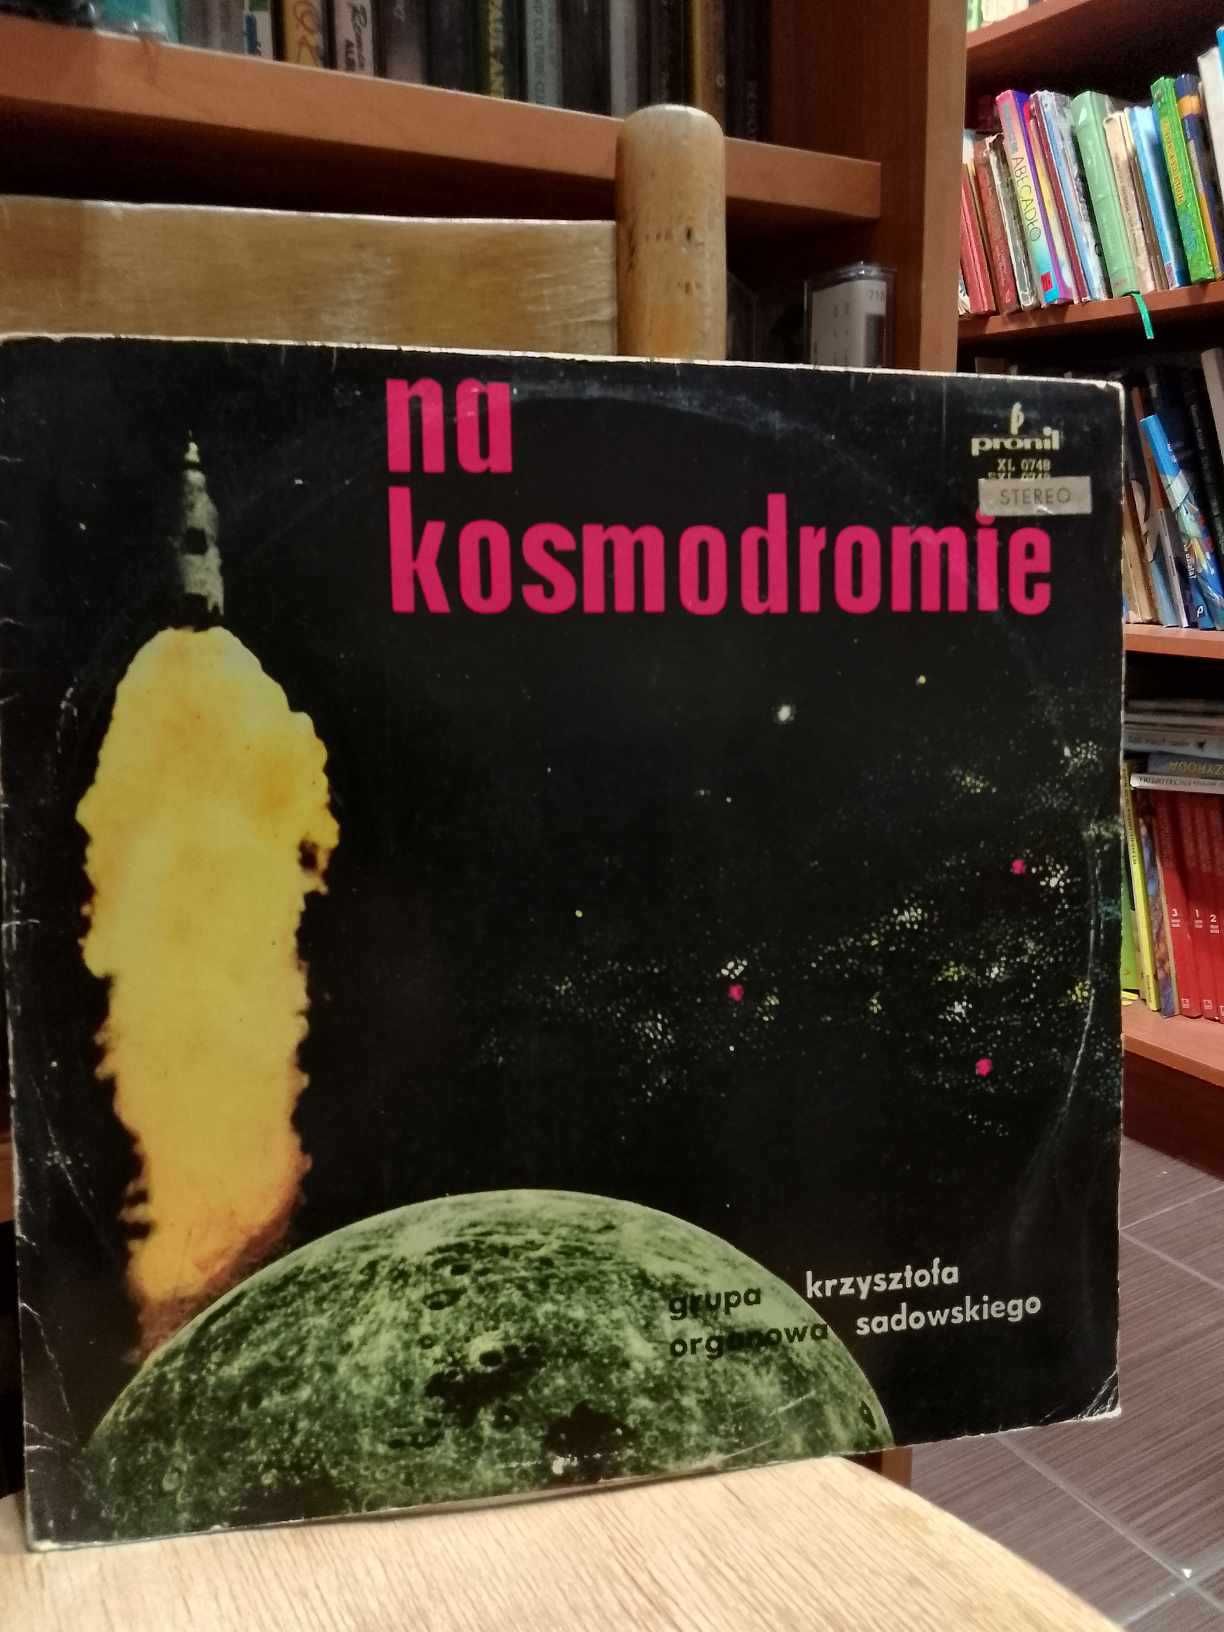 Grupa organowa Krzysztofa Sadowskiego - Na kosmodromie.